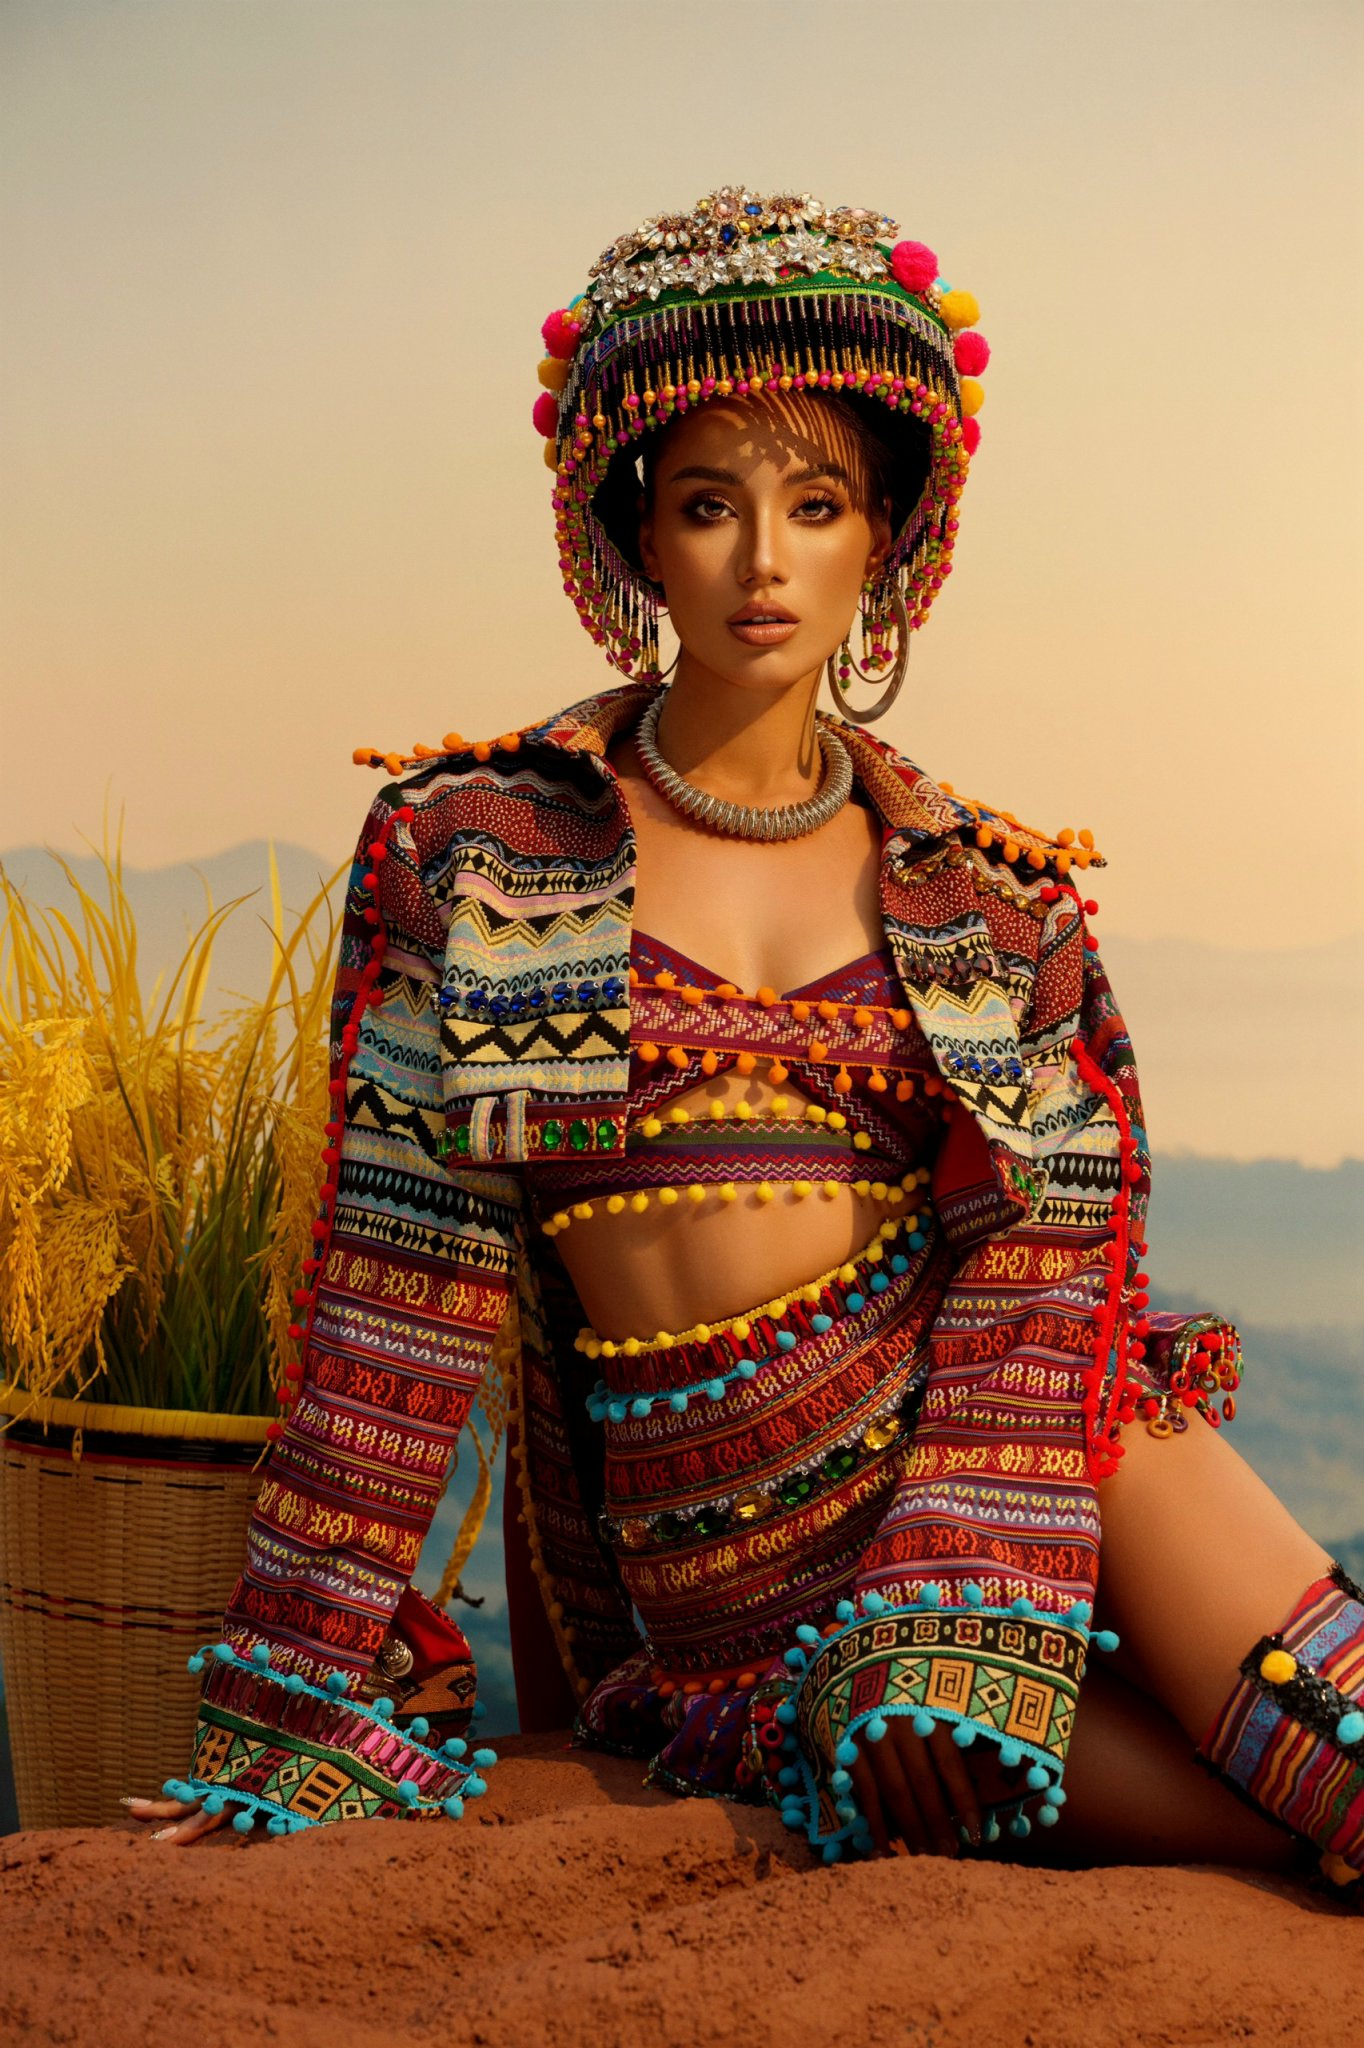 Về chất liệu, NTK Tăng Thành Công cho biết trang phục này làm hoàn toàn bằng thổ cẩm được dệt từ những đôi bàn tay khéo léo của người dân đồng bào Tây Bắc, có màu sắc sặc sỡ và hoạ tiết đặc trưng.